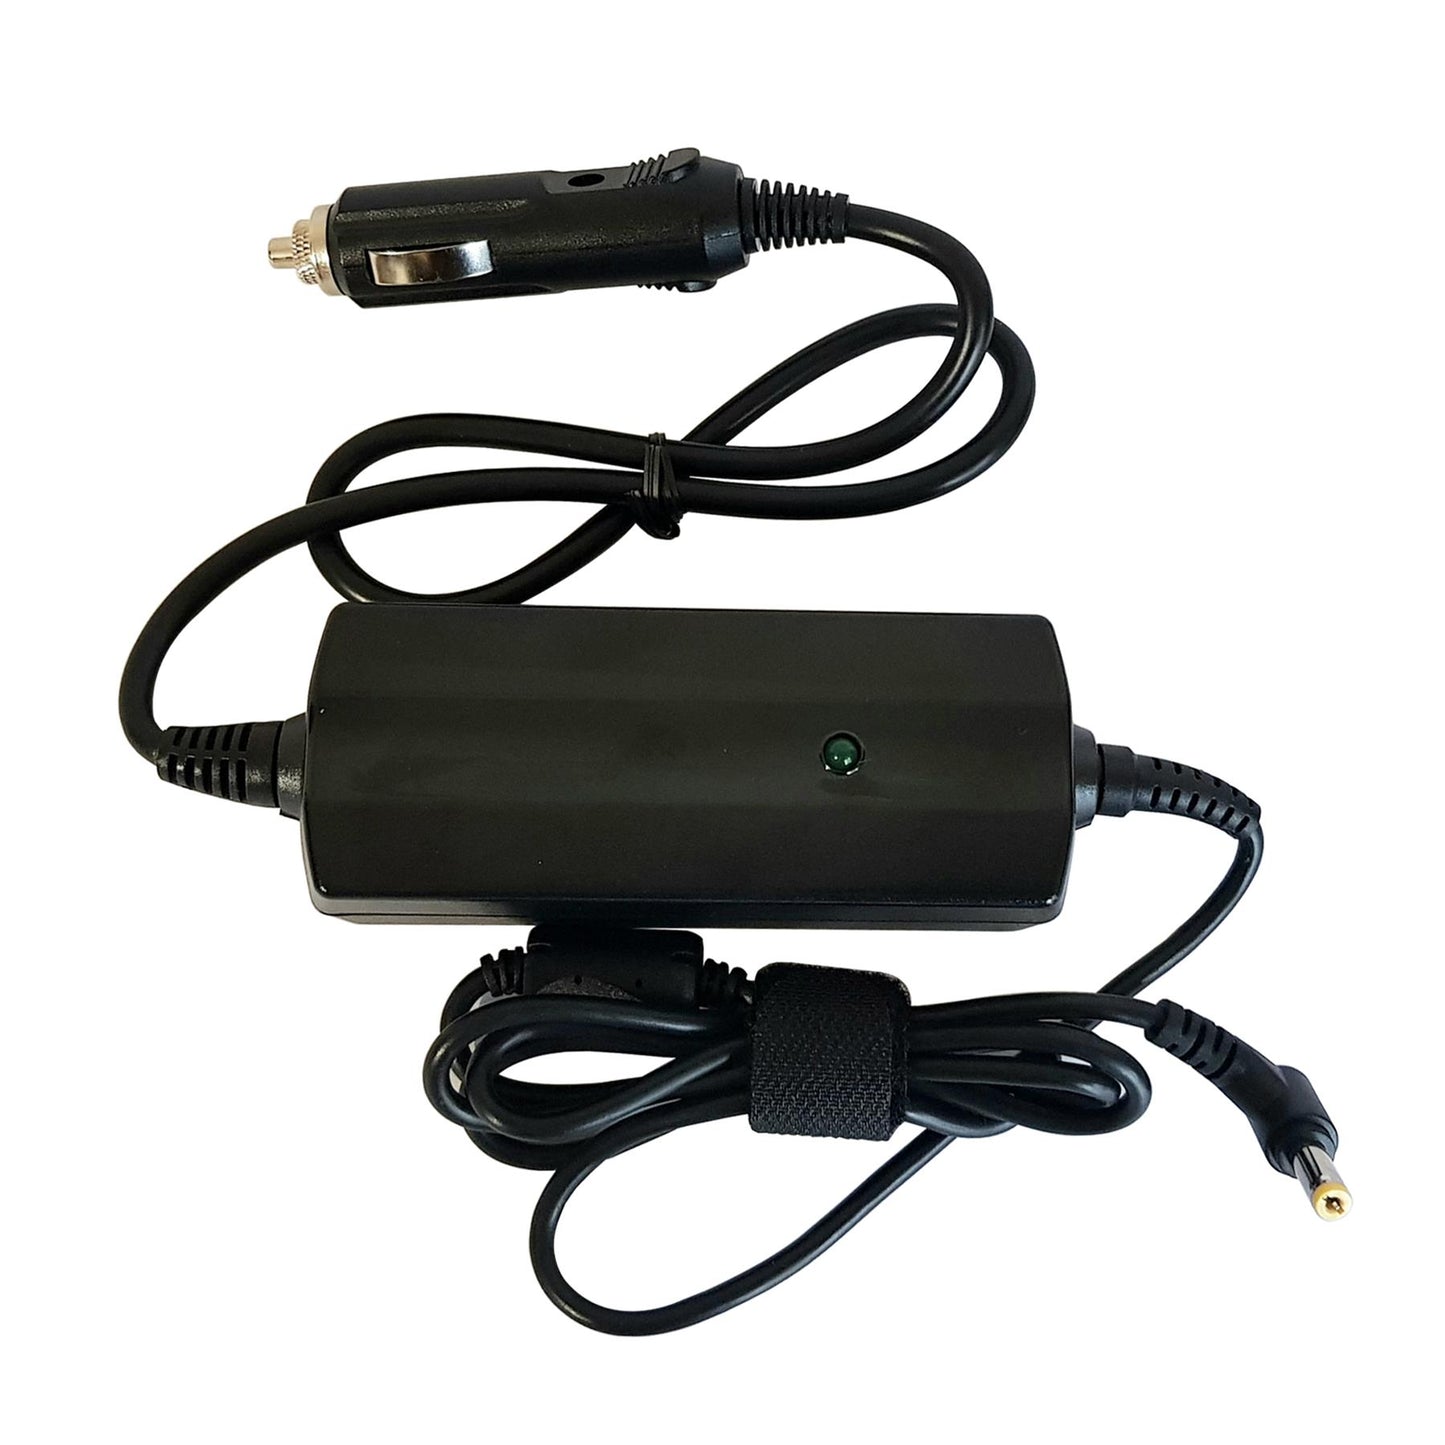 KUMA 12v TV Power Lead - Voltage Stabiliser Adapter with Cigarette Lighter Plug Input - Fully Regulated Adaptor Surge Protector Regulator for LED LCD SAT NAV Satellite Navigation Television - 12 volts